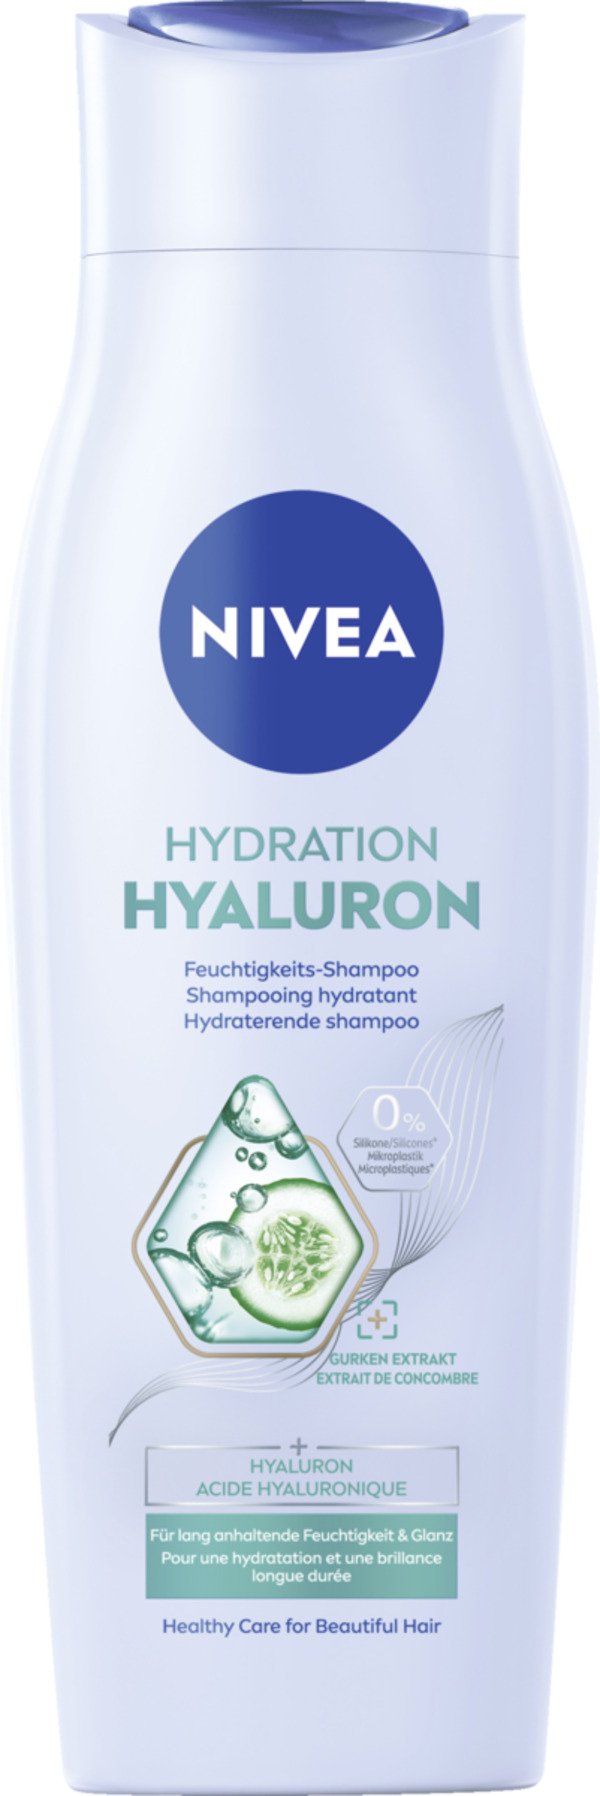 Bild 1 von NIVEA Hydration Hyaluron Feuchtigkeits-Shampoo